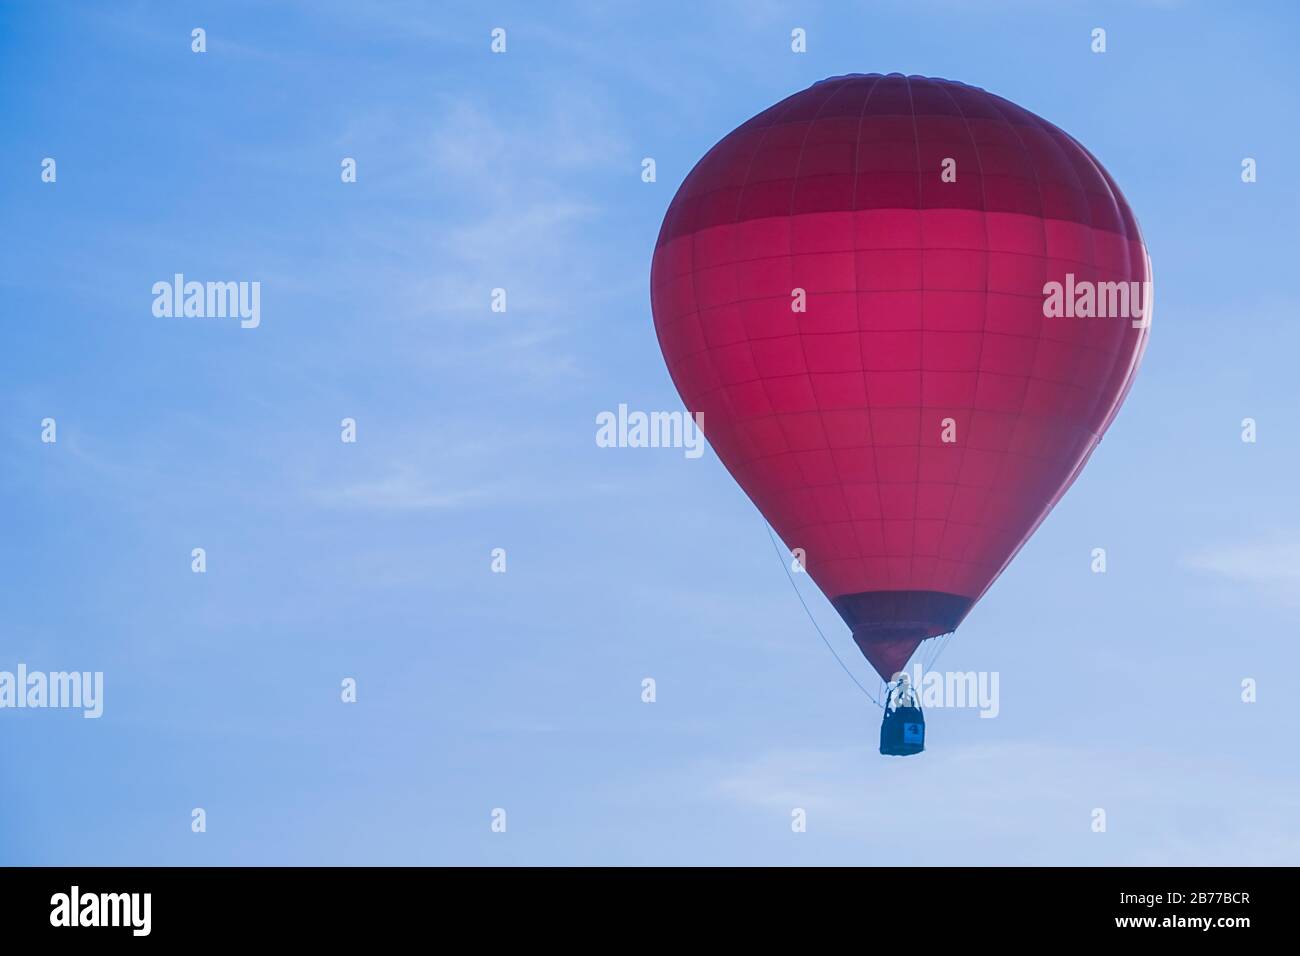 Un festival di mongolfiera presenta parapendio, palloncini ad aria calda e altre forme di trasporto aereo. Il lancio della mongolfiera è l'evento principale. Foto Stock